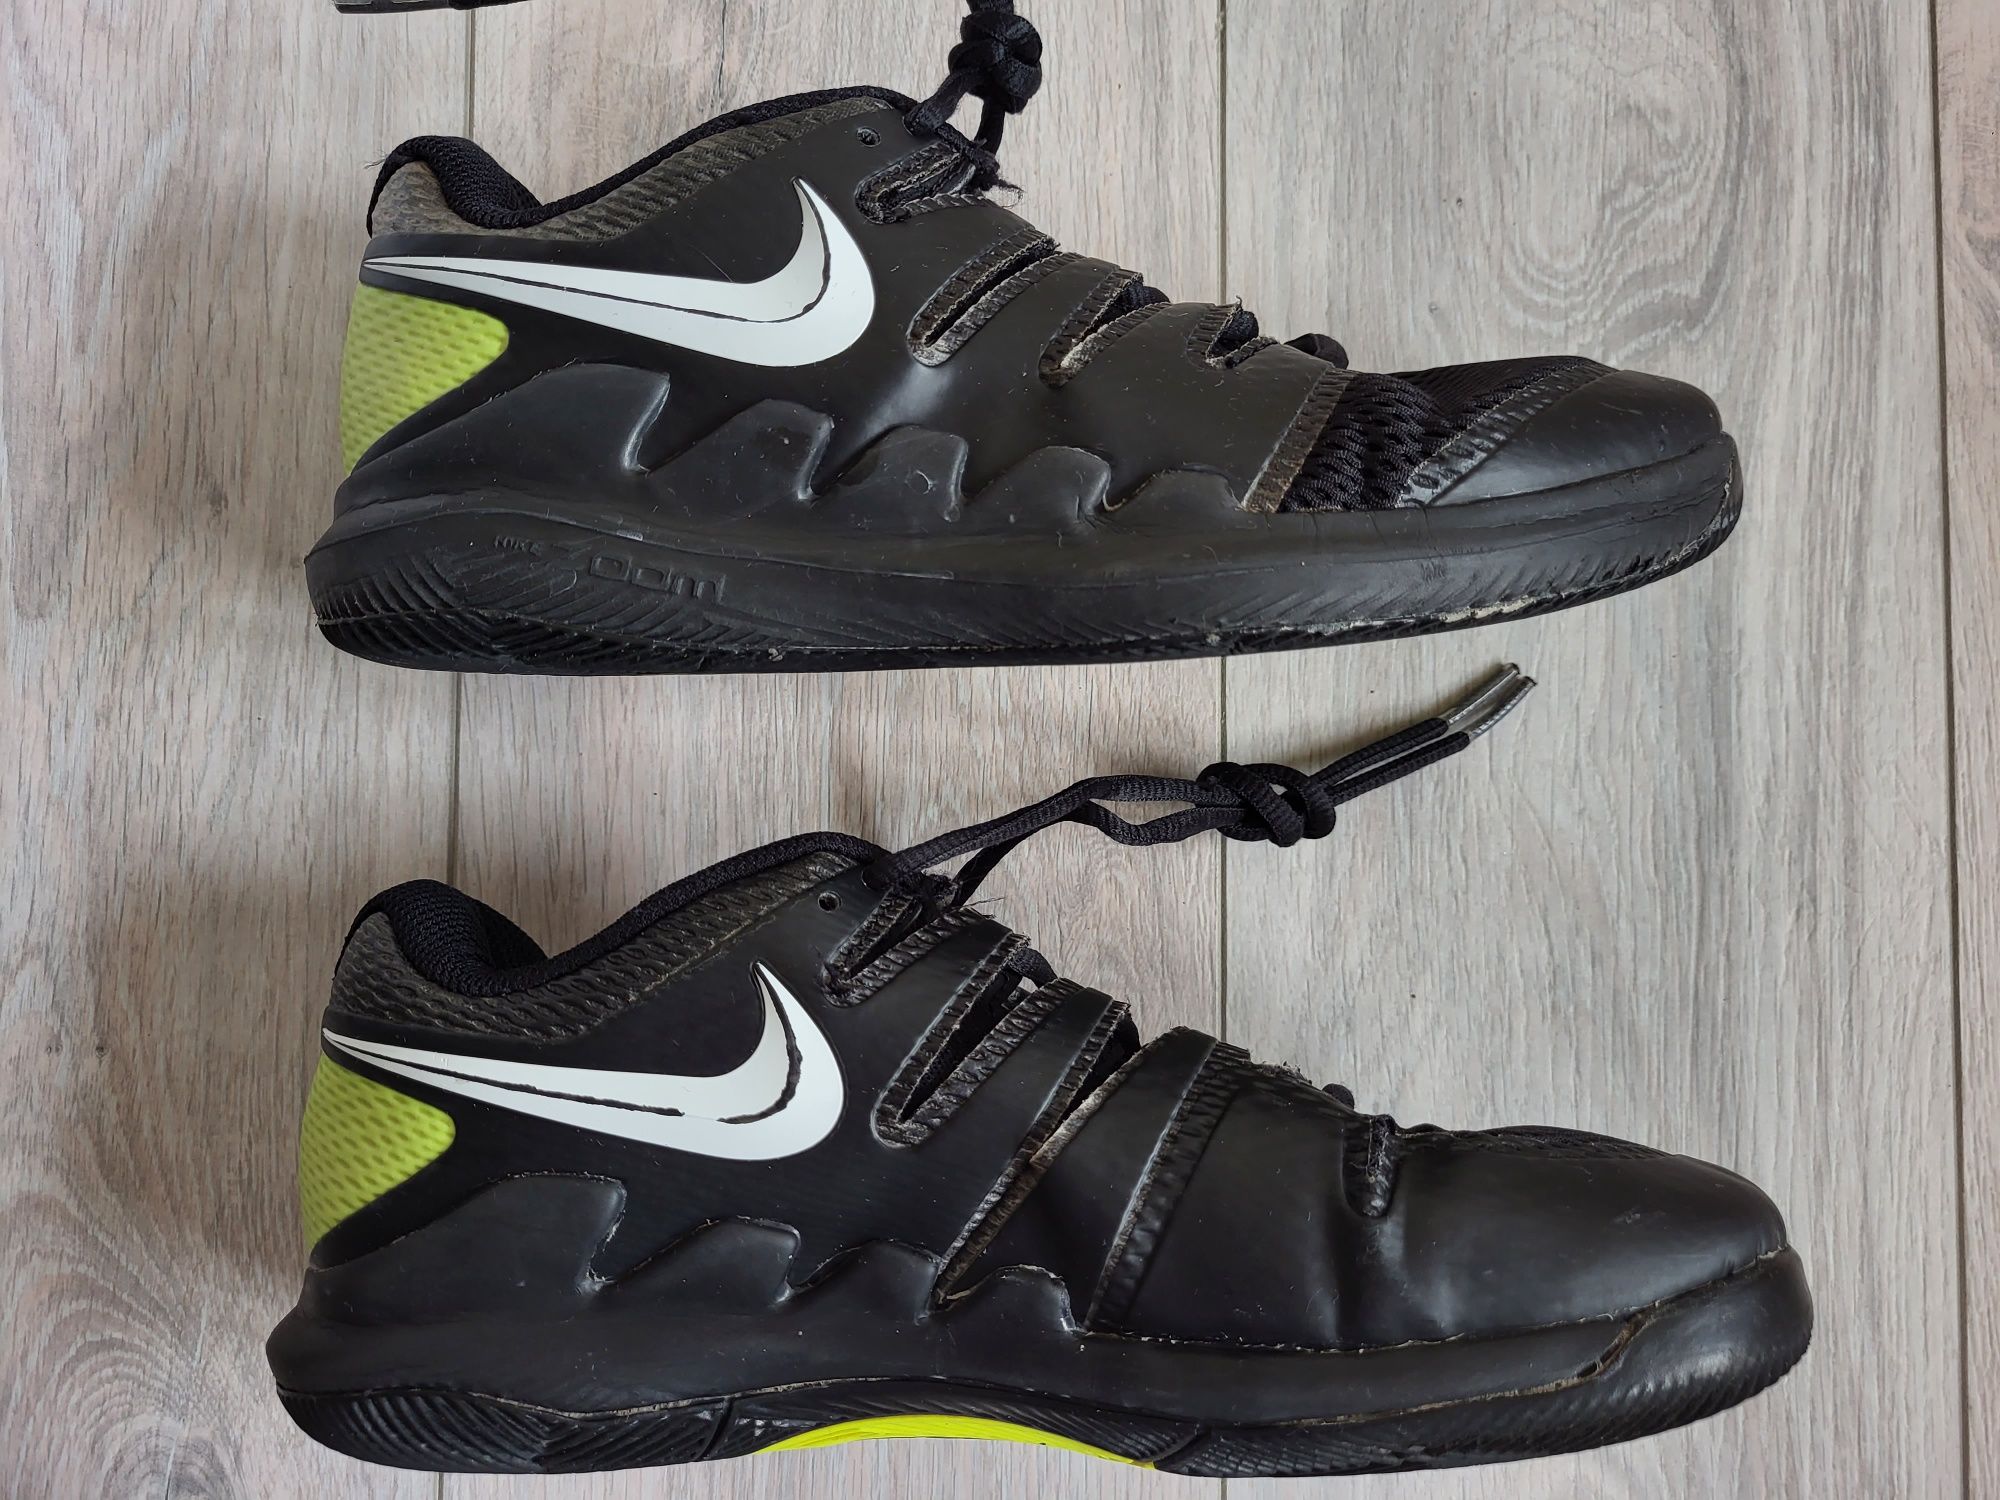 Adidași Nike 37.5/23.5cm negru